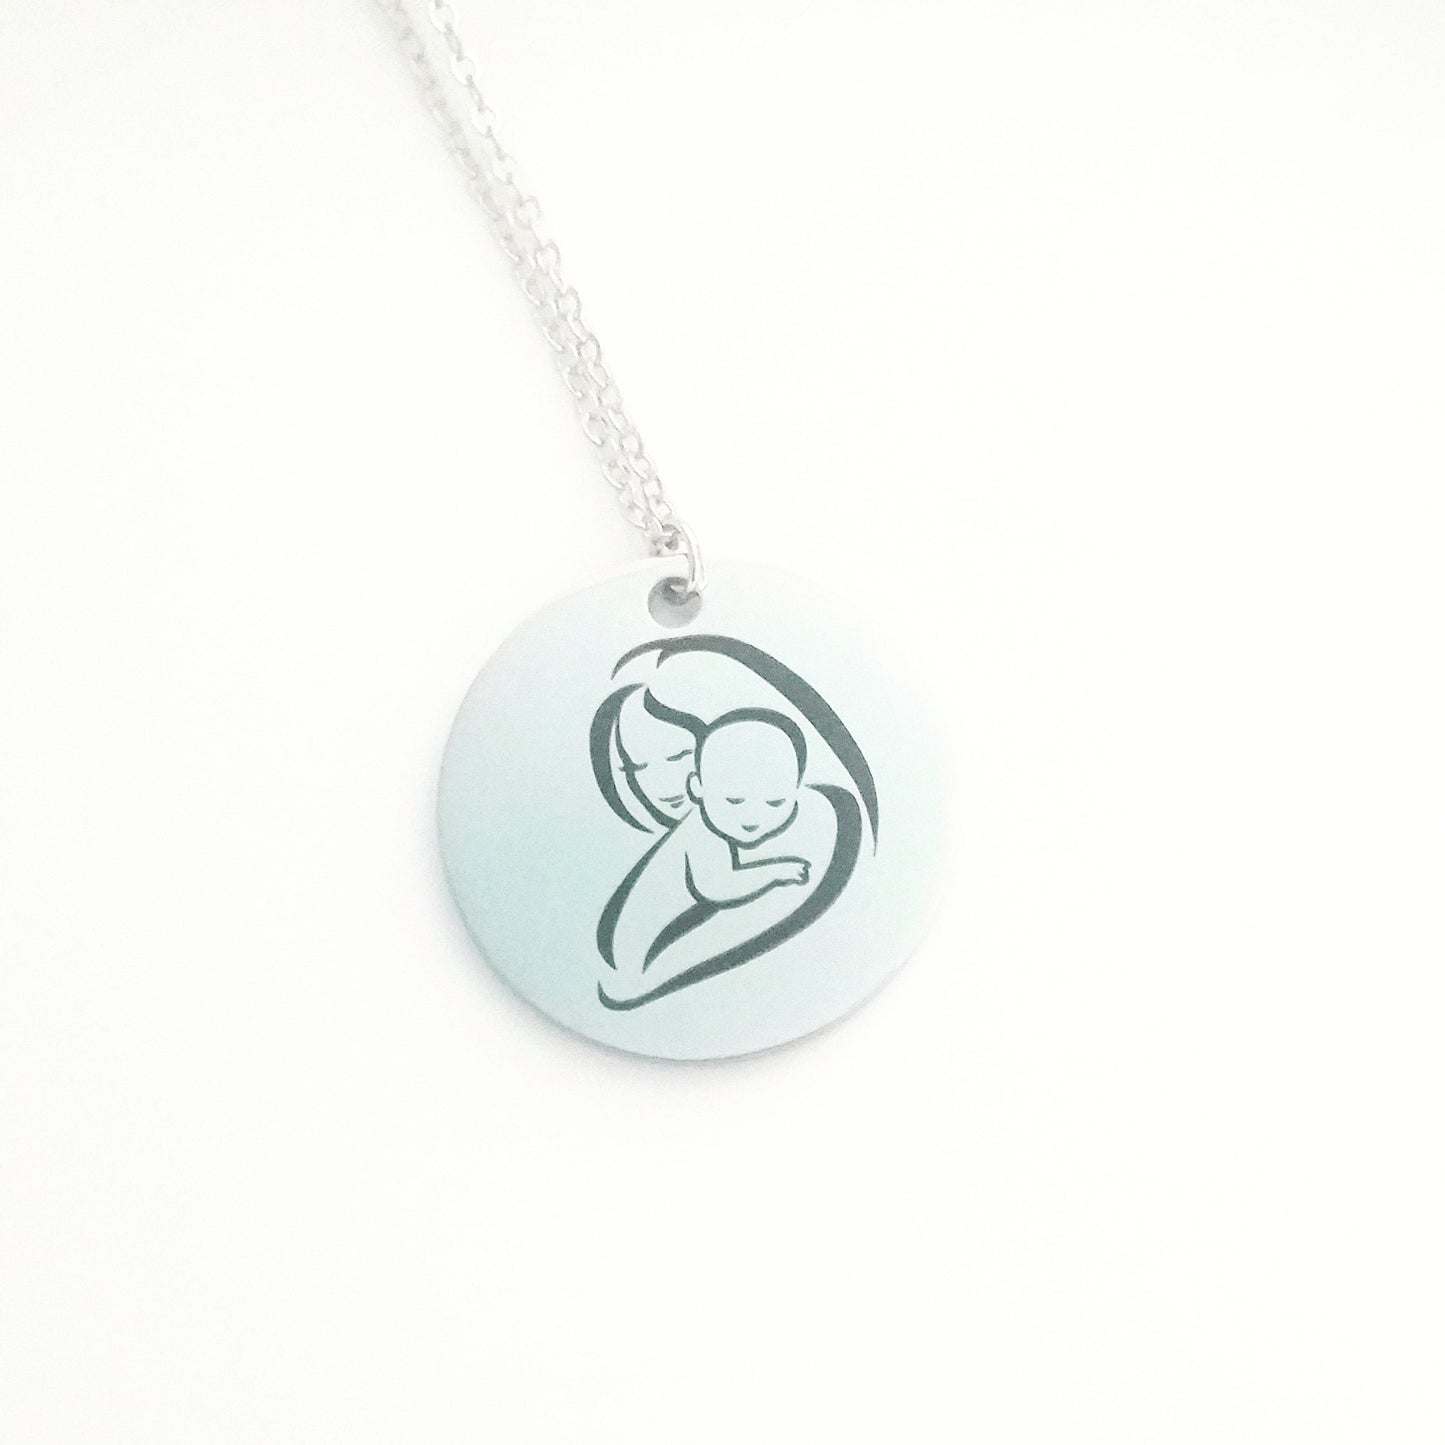 Nuevo collar MOM, regalo del primer día de la madre, colgante de plata grabado, collar de mamá y bebé, colgante personalizado, collar de recuerdo para la madre